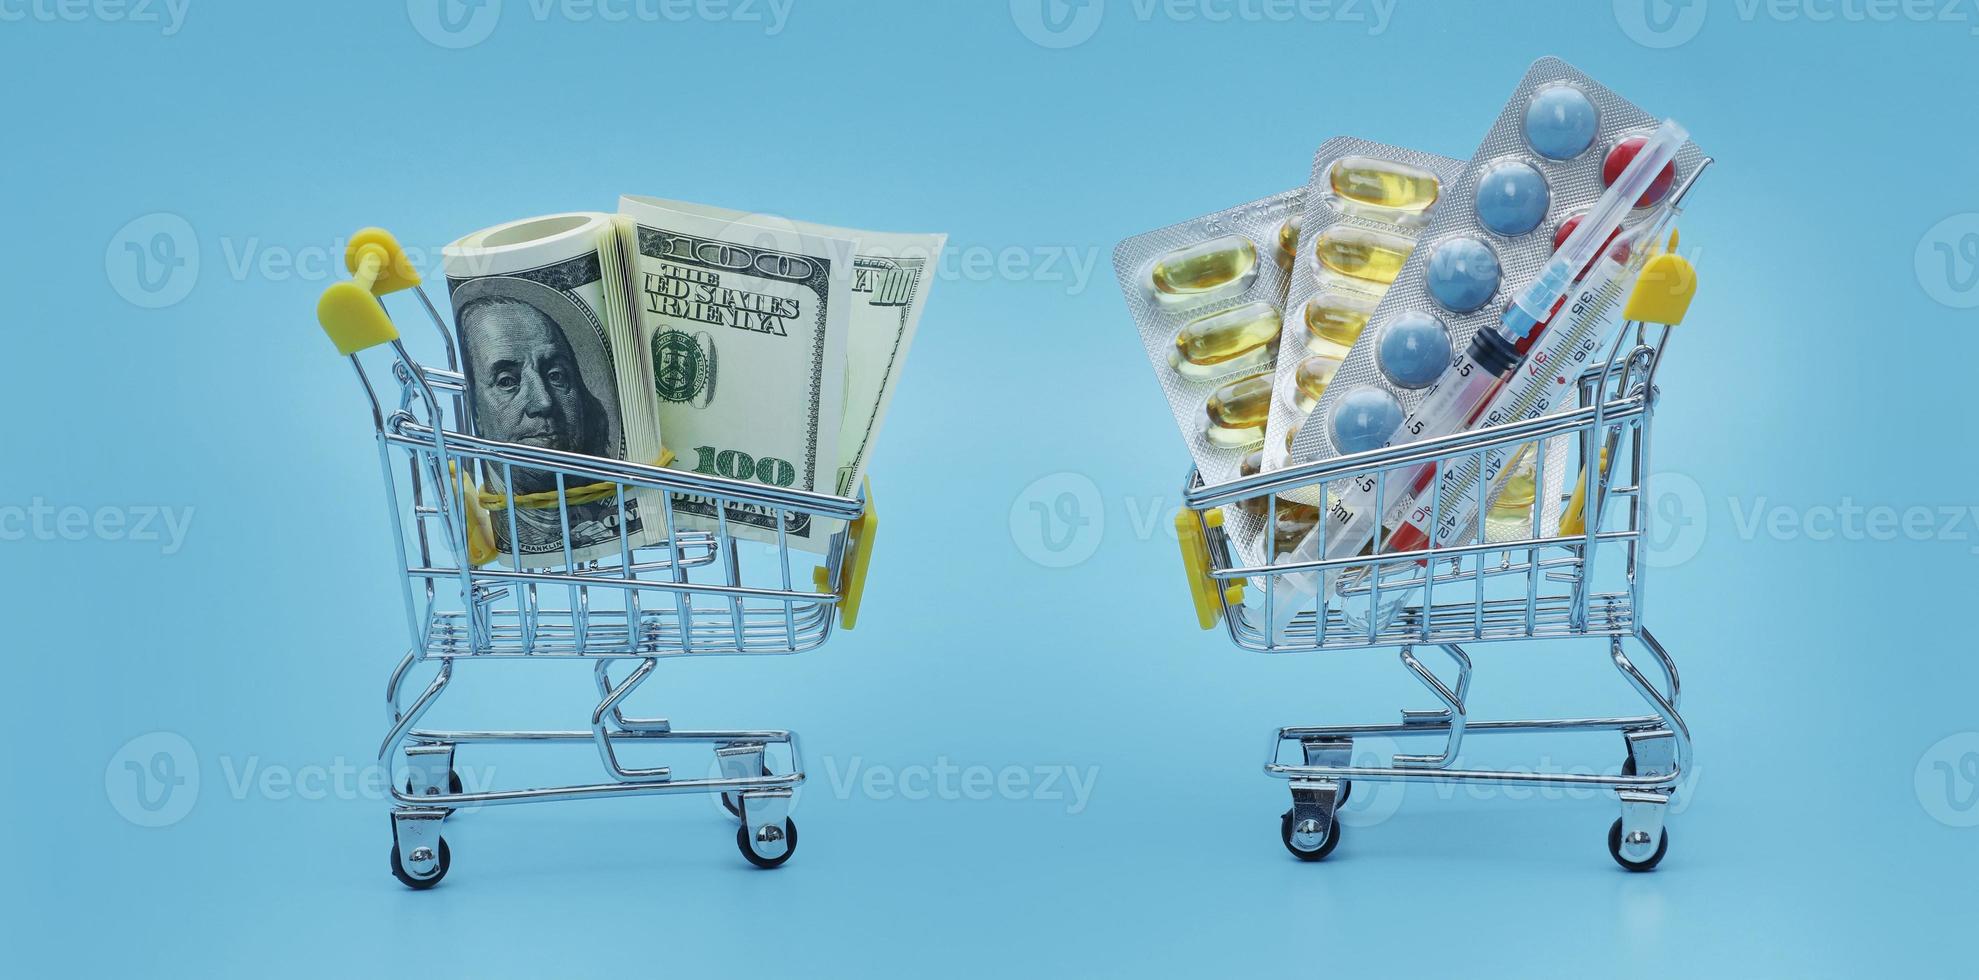 gul handla vagn med piller står på dollar räkningar på en blå bakgrund närbild. baner. begrepp av sjukvård, uppkopplad handla, hög kosta av mediciner. dyr medicin. selektiv fokus foto